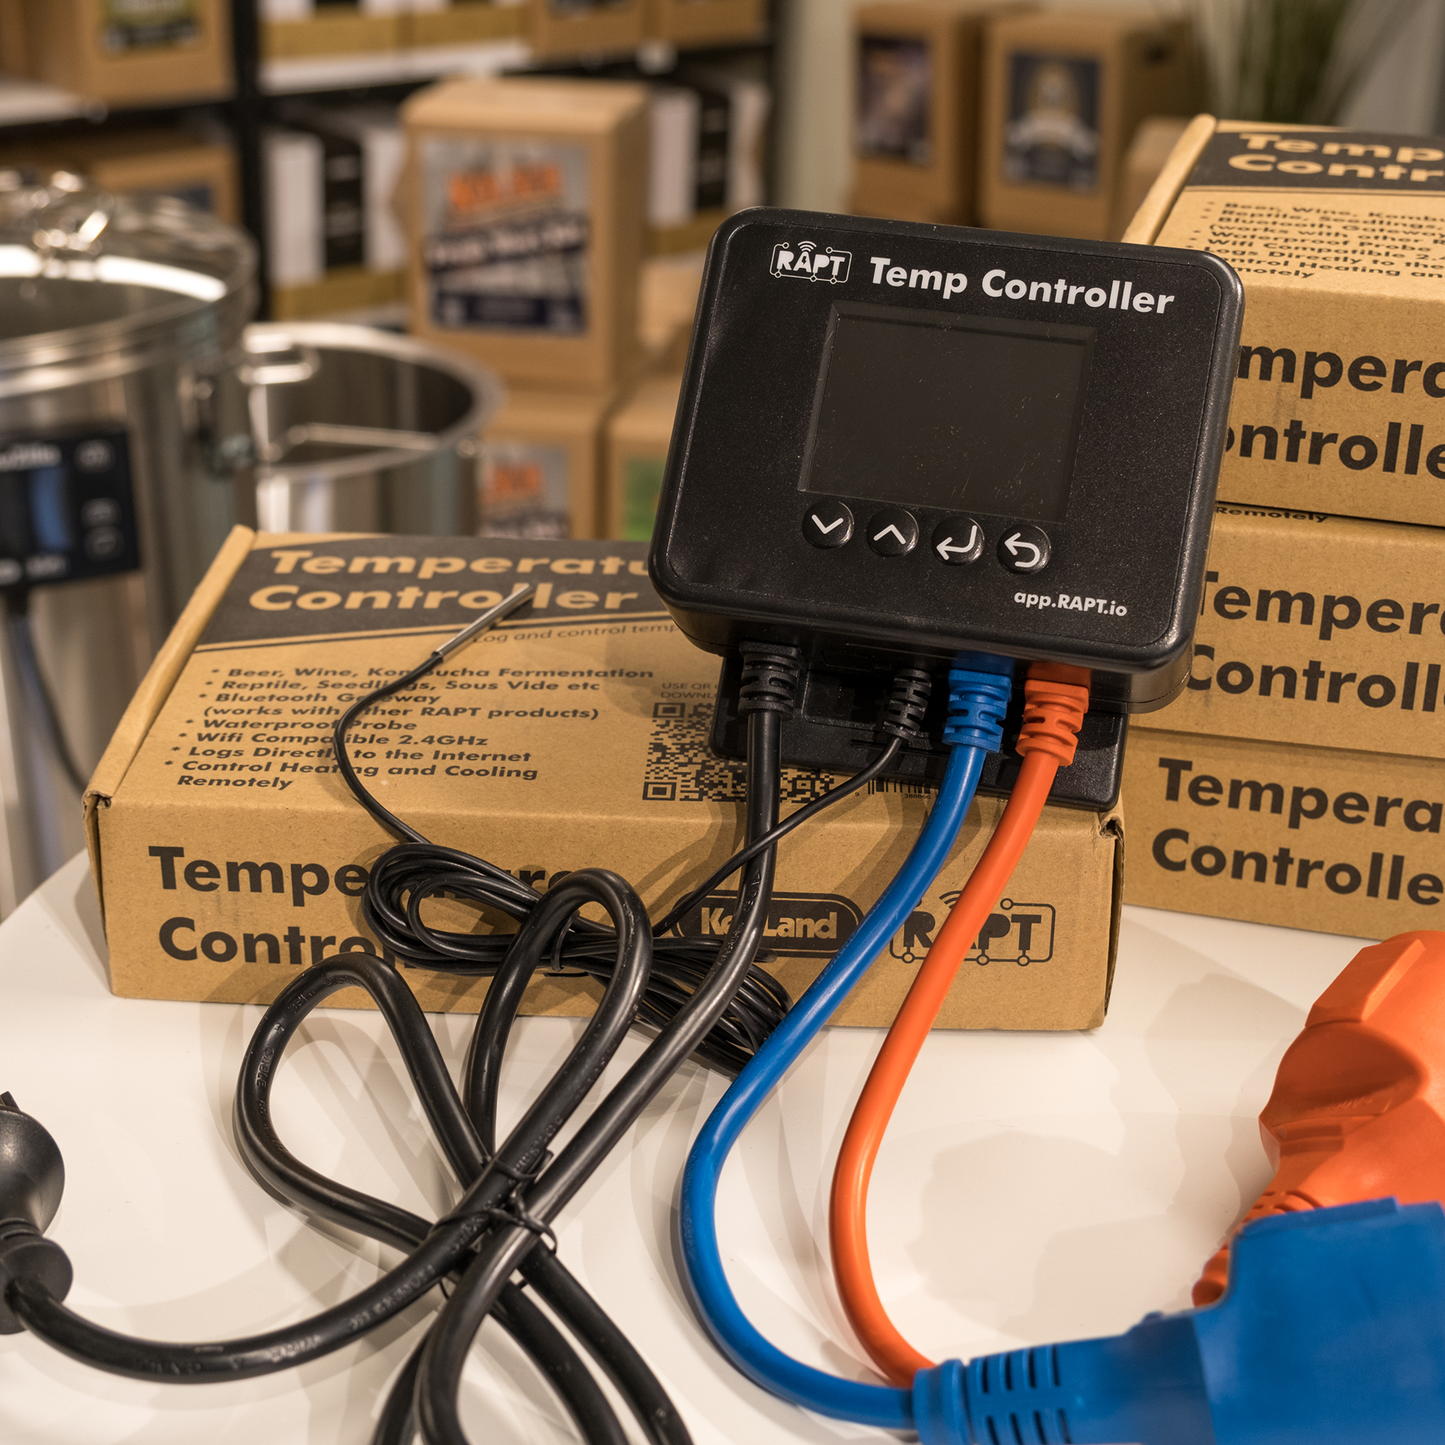 RAPT Temperature Controller